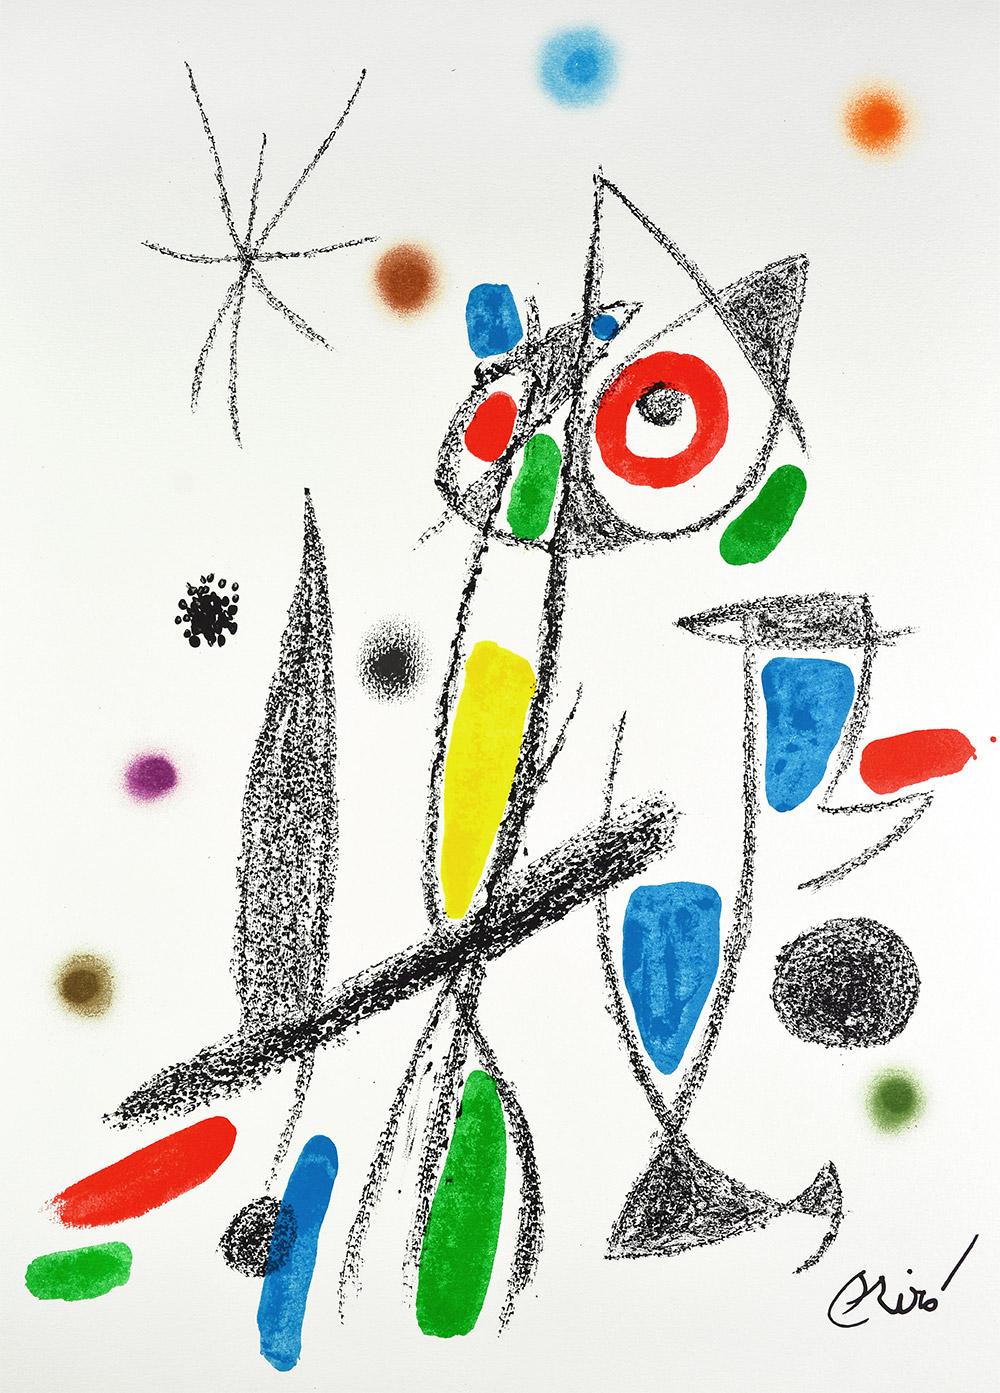 Joan Miró - Maravillas con variaciones acrósticas en el jardín de Miró XII
Date of creation: 1975
Medium: Lithograph on Gvarro paper
Edition: 1500
Size: 49,5 x 35,5 cm
Observations:
Lithograph on Gvarro paper plate signed. Edited by Polígrafa,